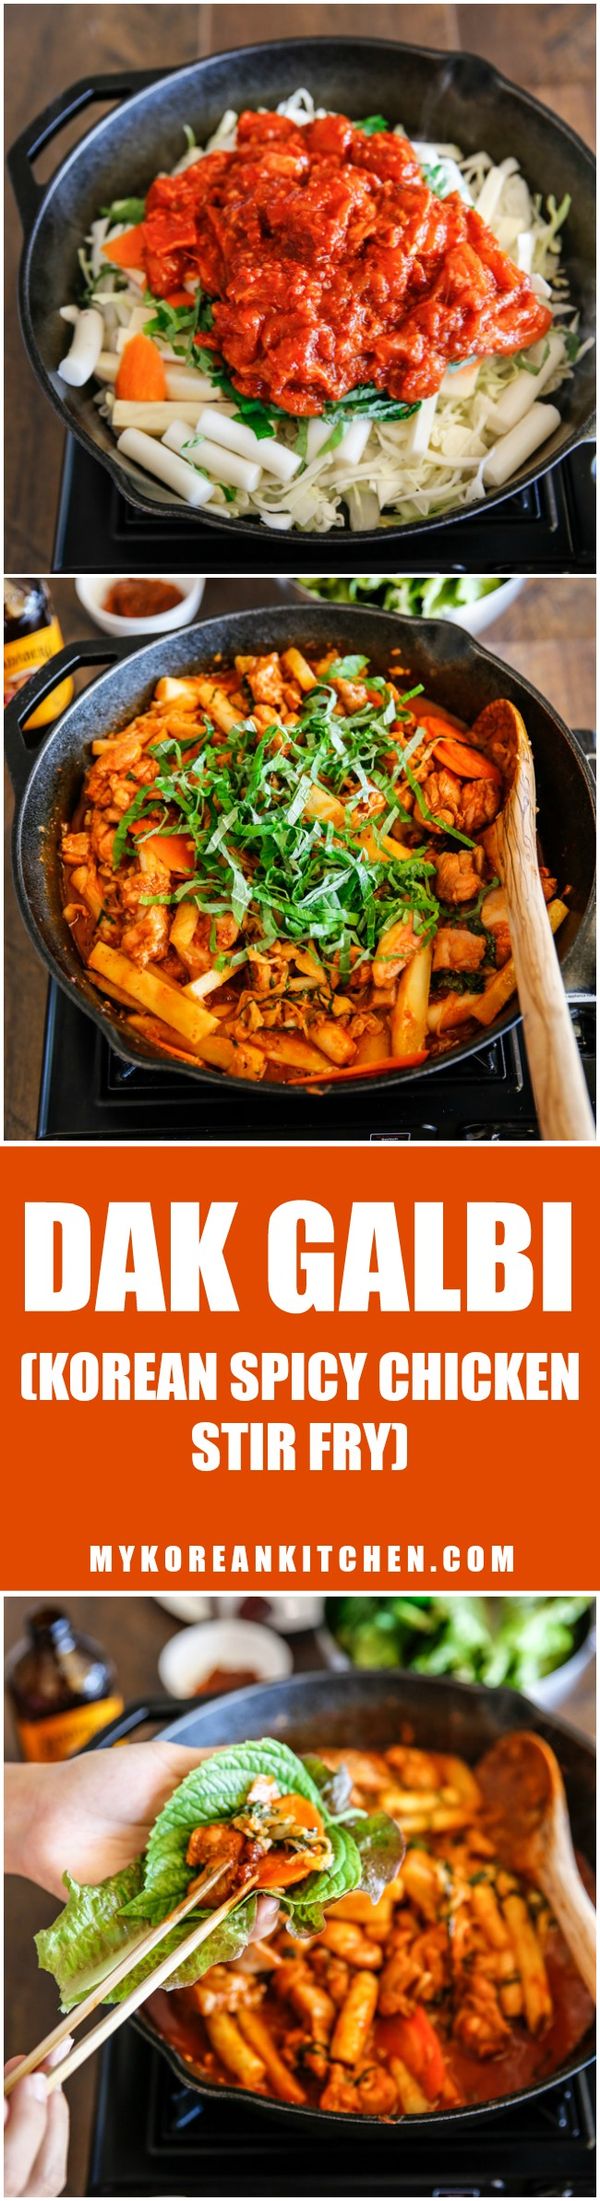 Dak Galbi (Korean Spicy Chicken Stir Fry